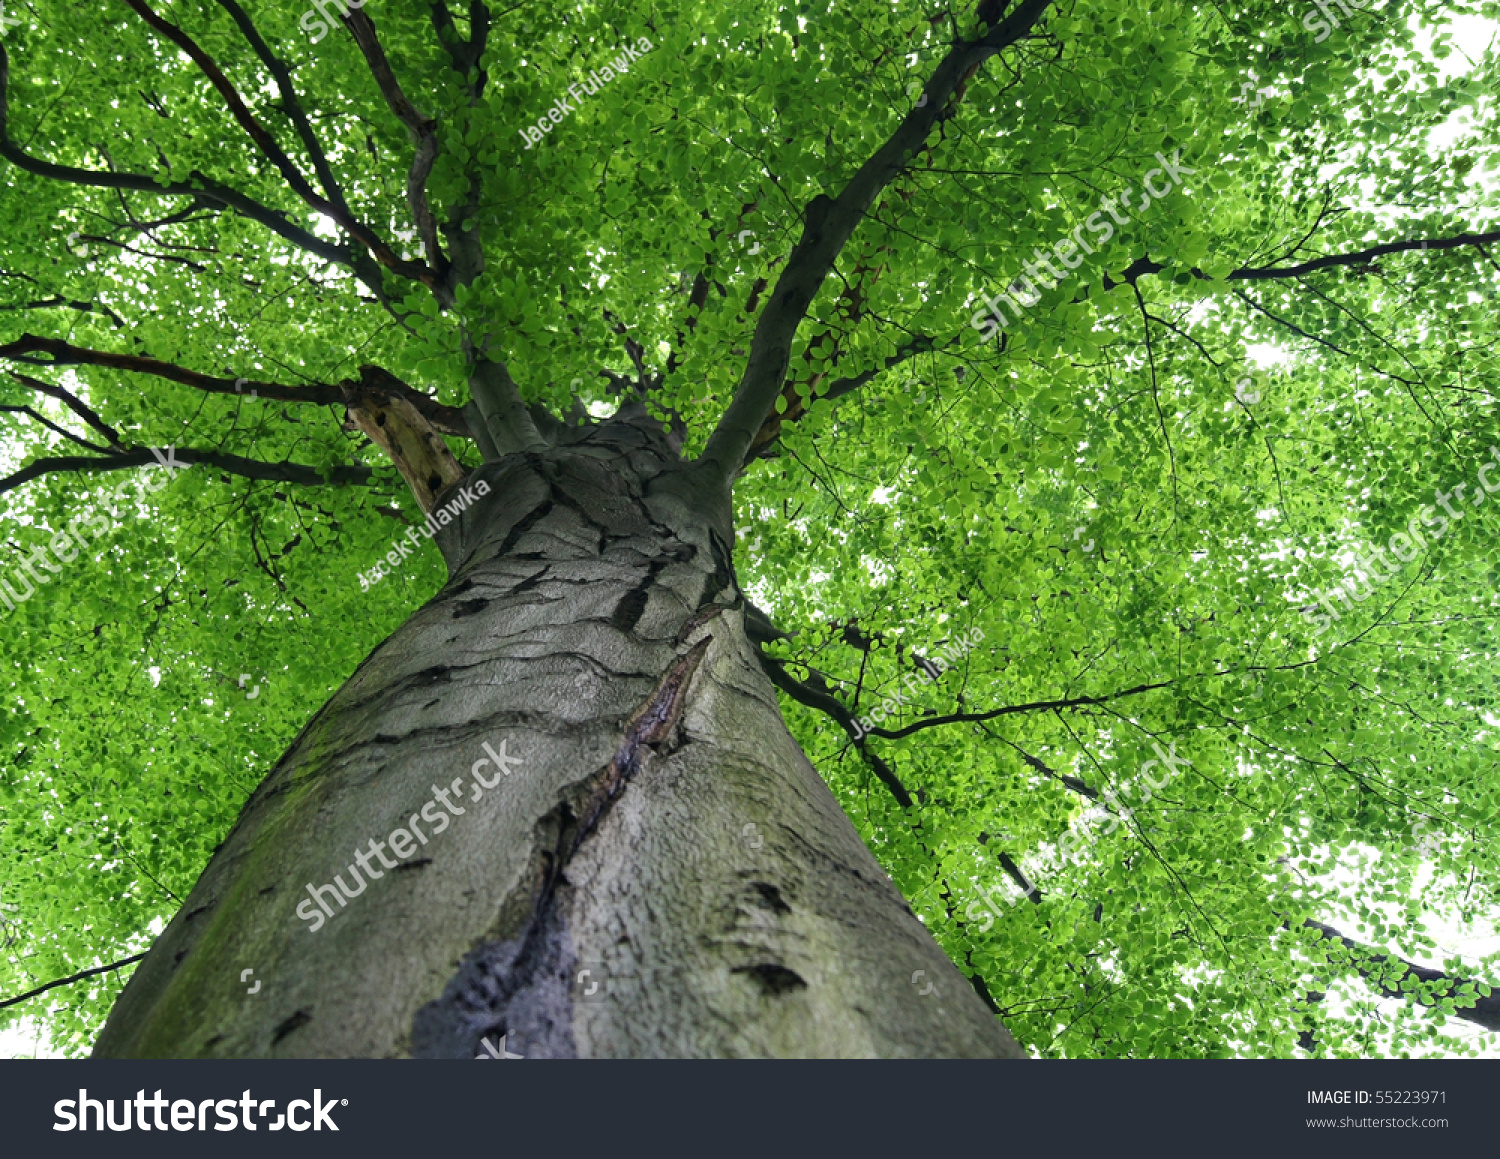 Walk in the woods, below a huge leafy tree #55223971